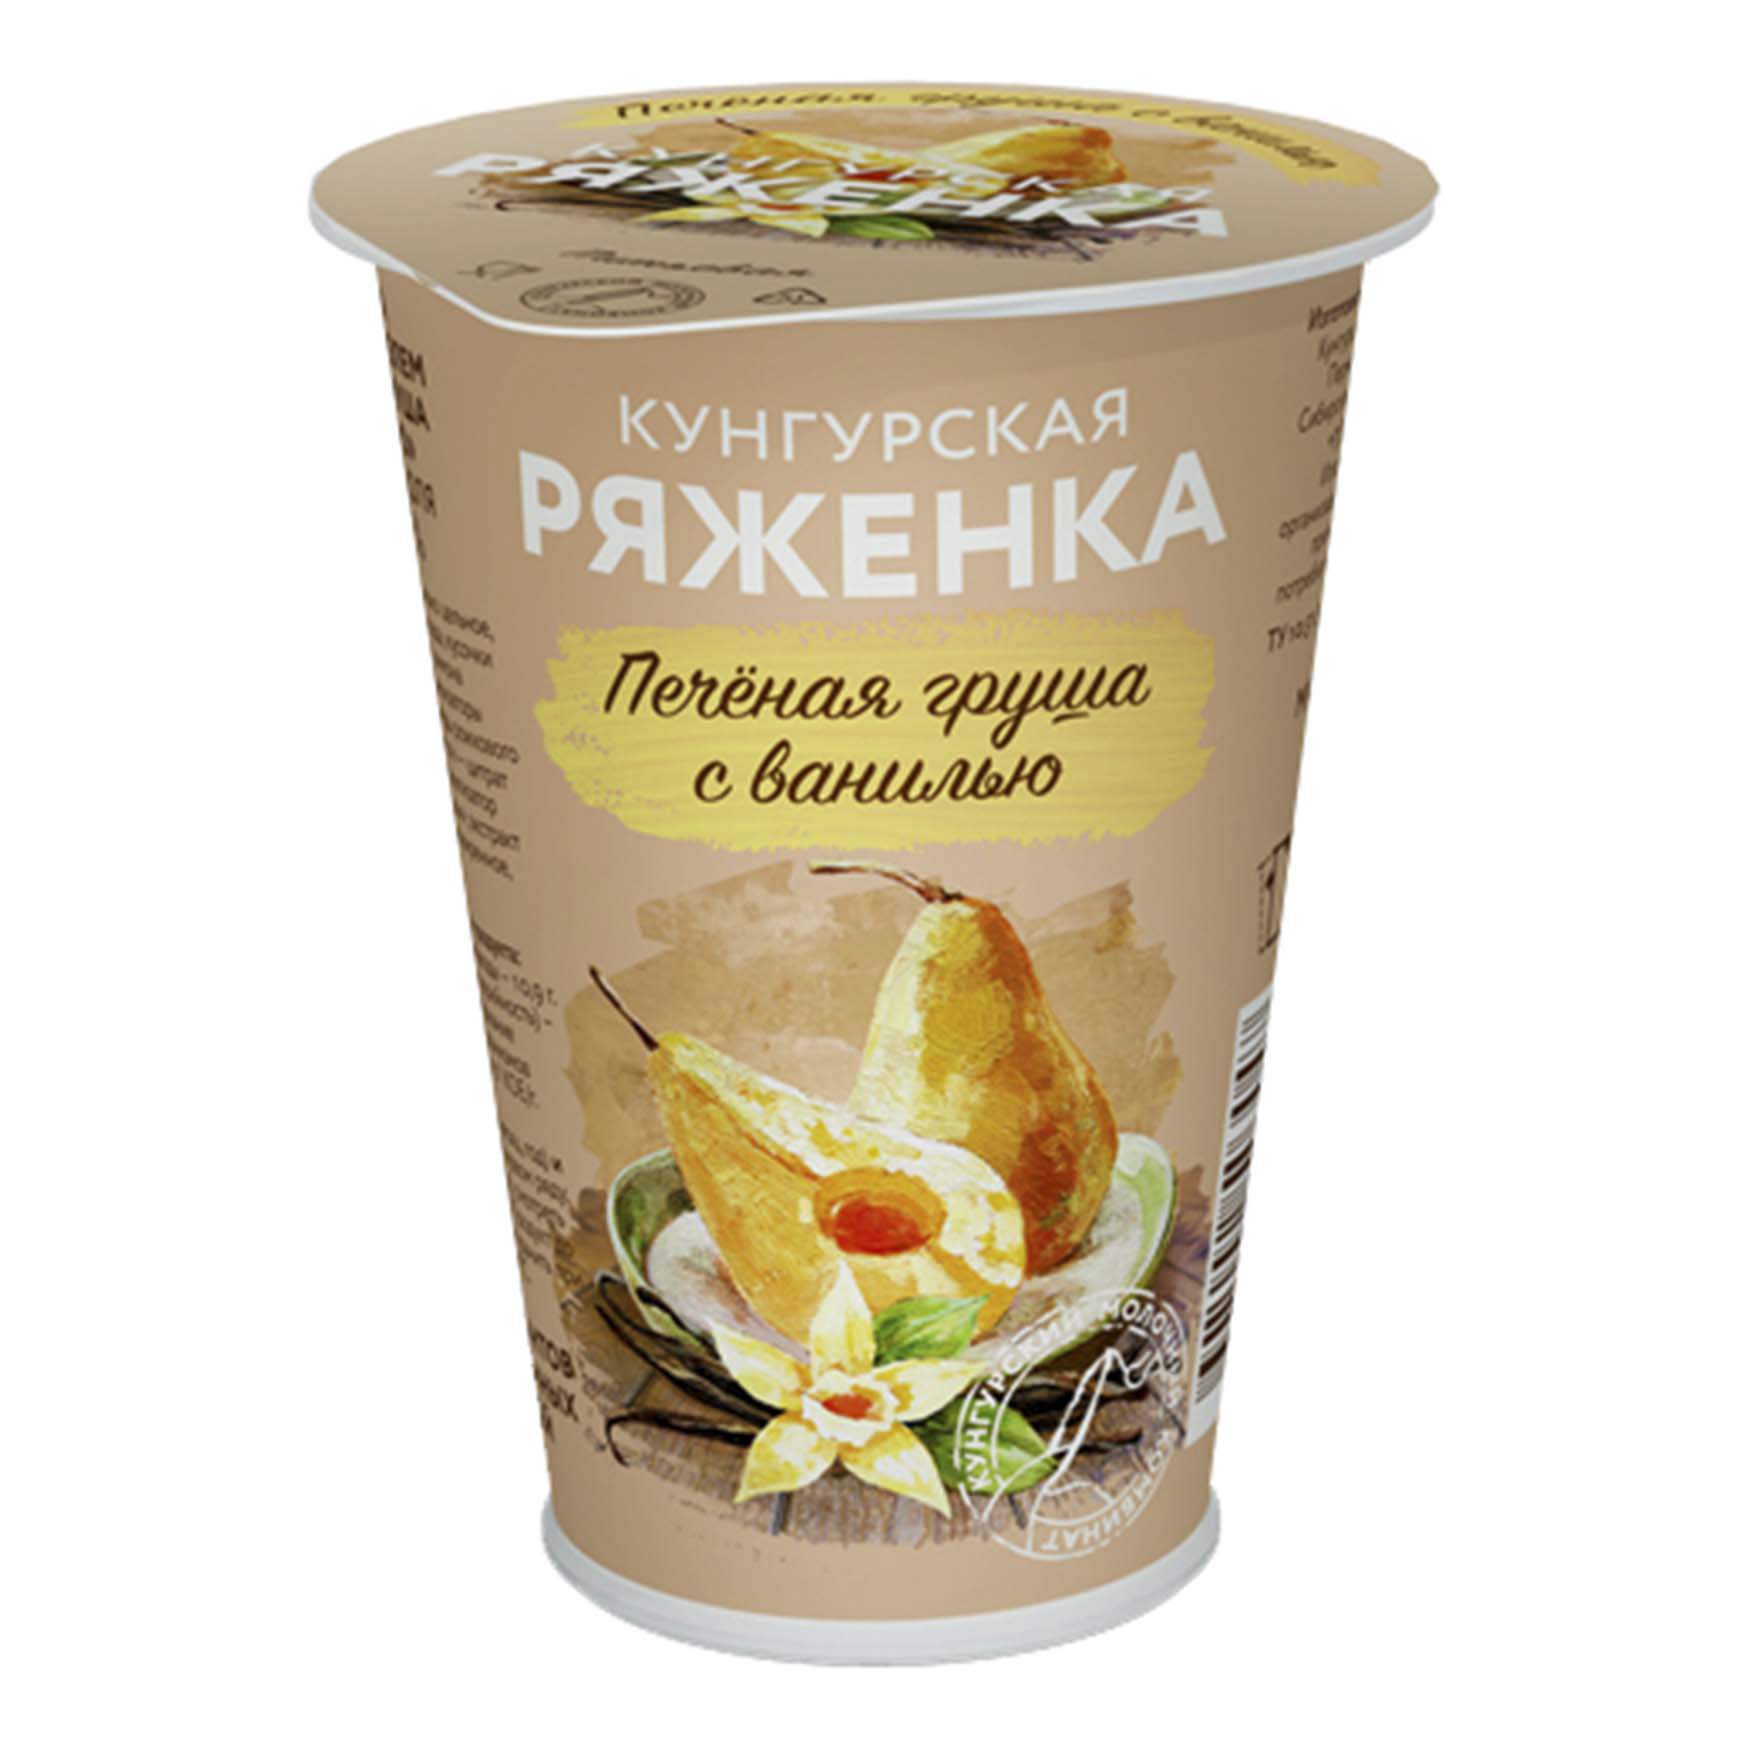 Ряженка с наполнителем Кунгурский МК печеная груша с ванилью 3,5% 190 мл